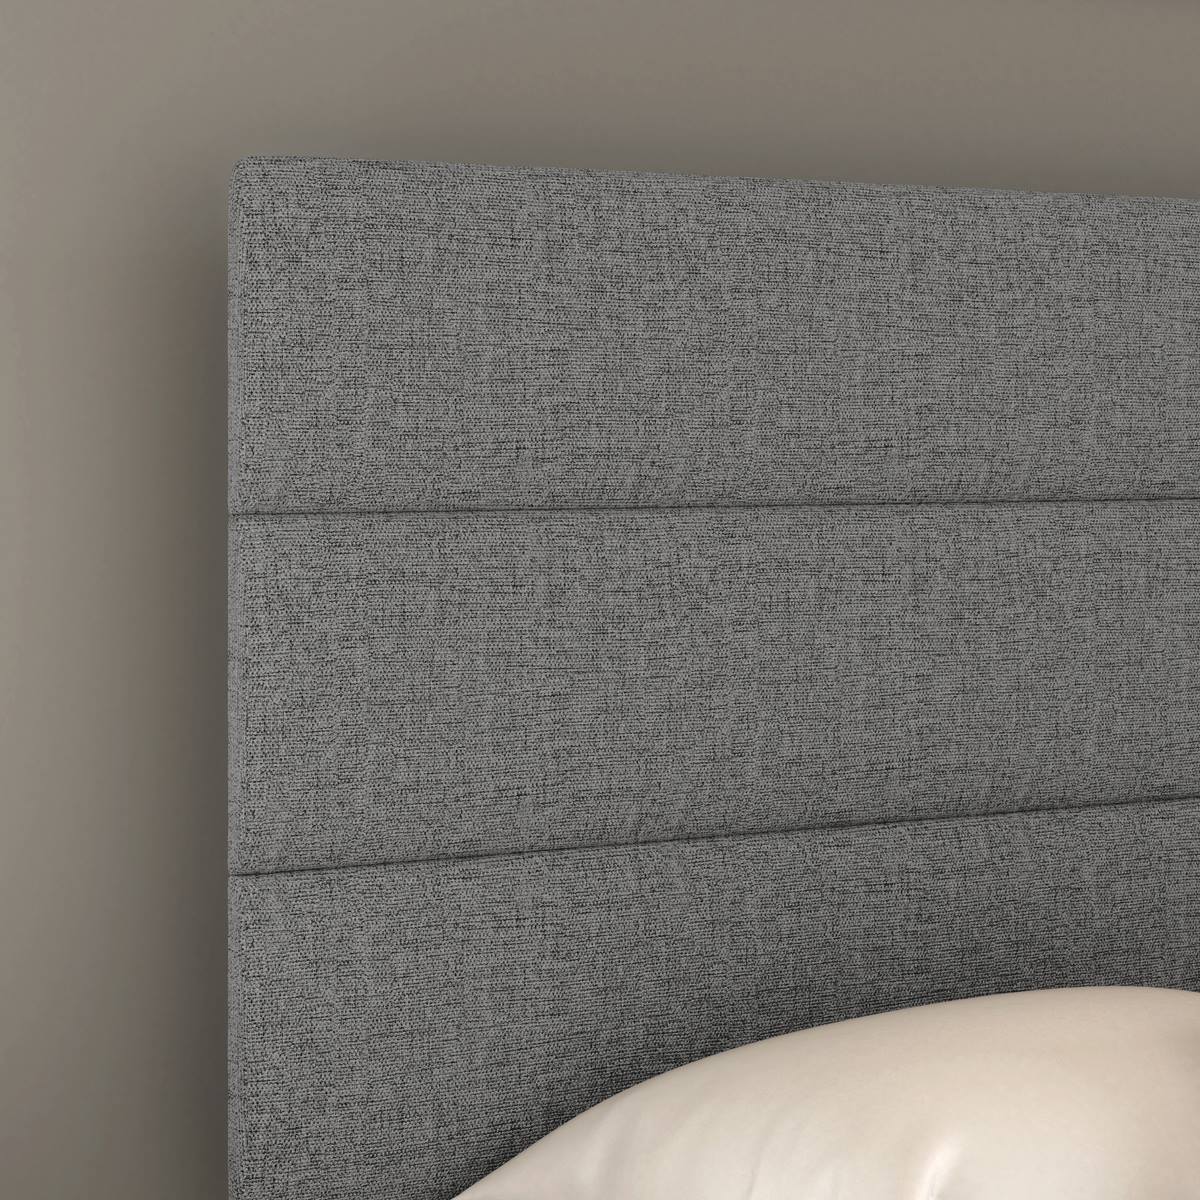 Boyd Sleep Grand Elegance Salina Upholstered Platform Bed Frame